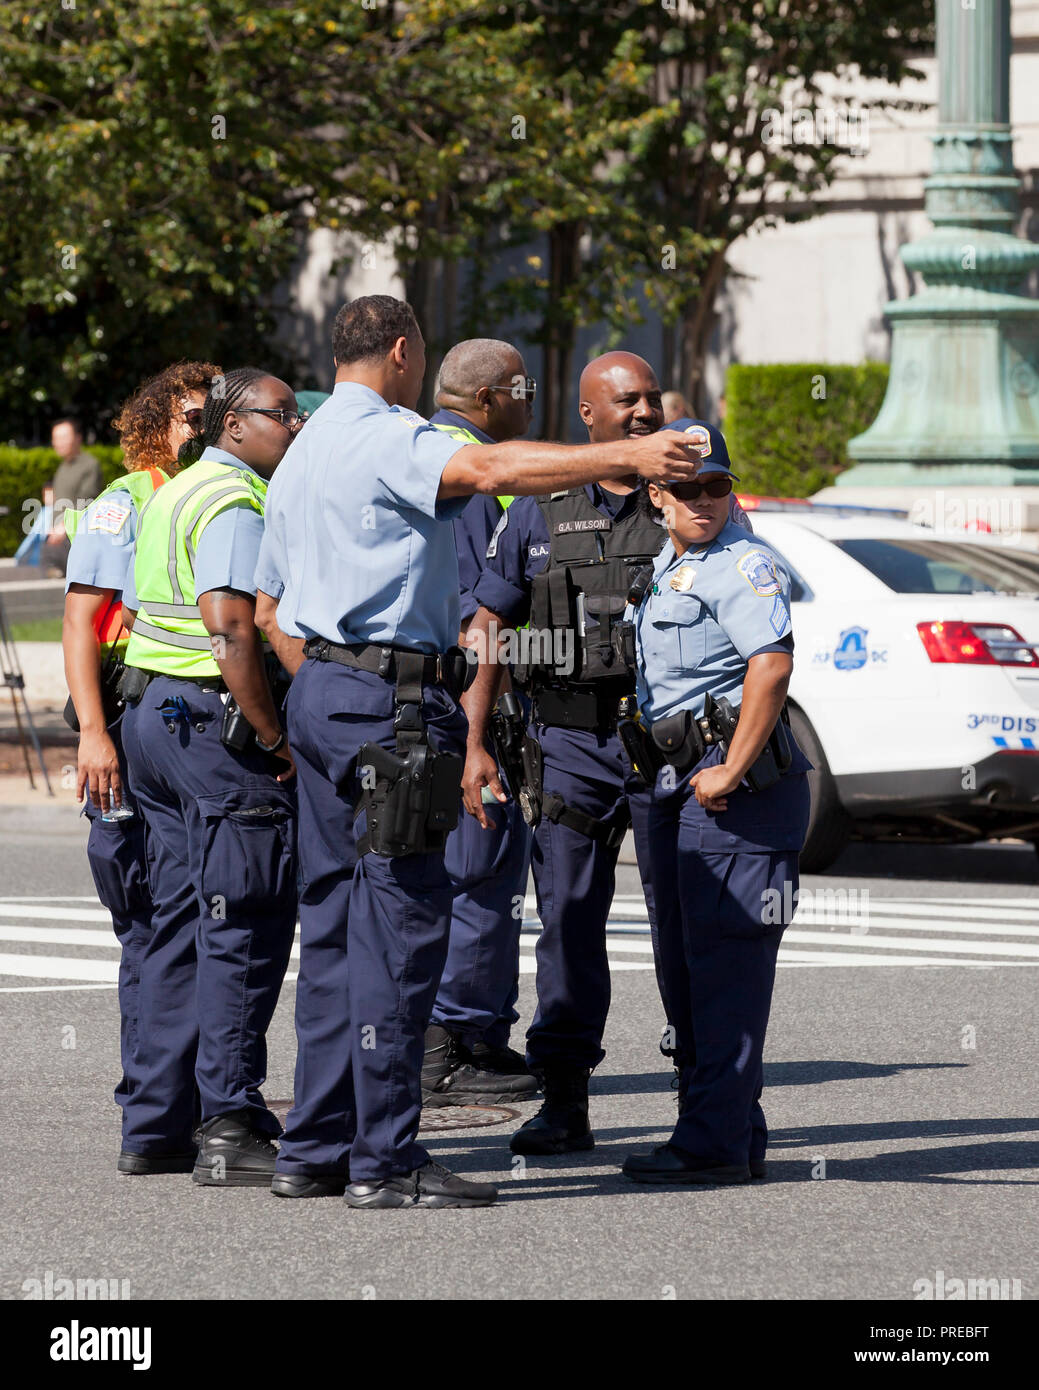 Les agents de police ensemble à un événement en plein air - Washington, DC USA Banque D'Images